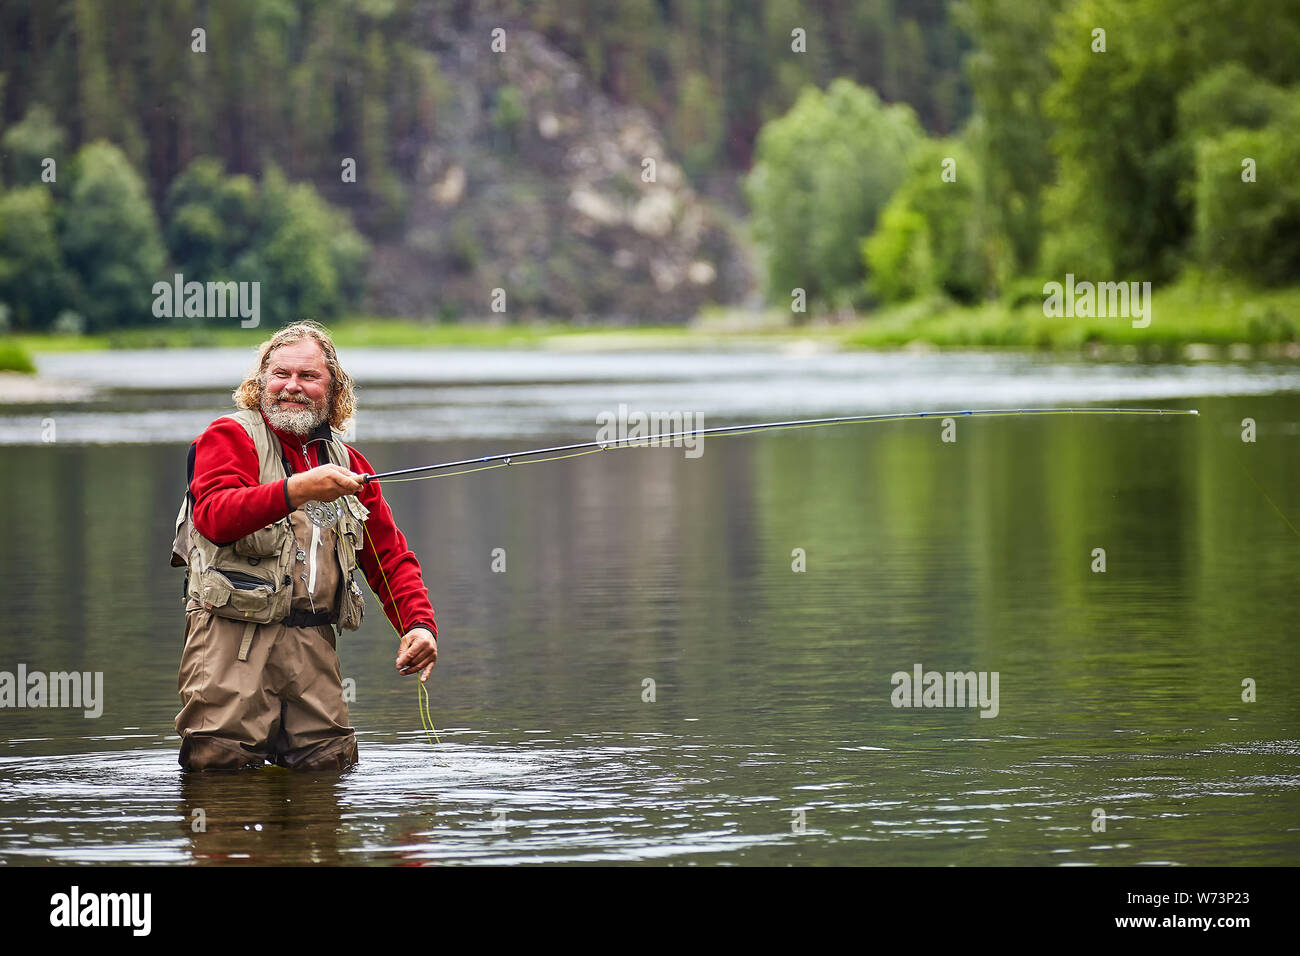 Whire nass Reife bärtige Mann steht im Wasser in wasserdichte Kleidung und Vorbereitung Fliegenfischen anzufangen, er lächelt, eco Tourismus. Stockfoto